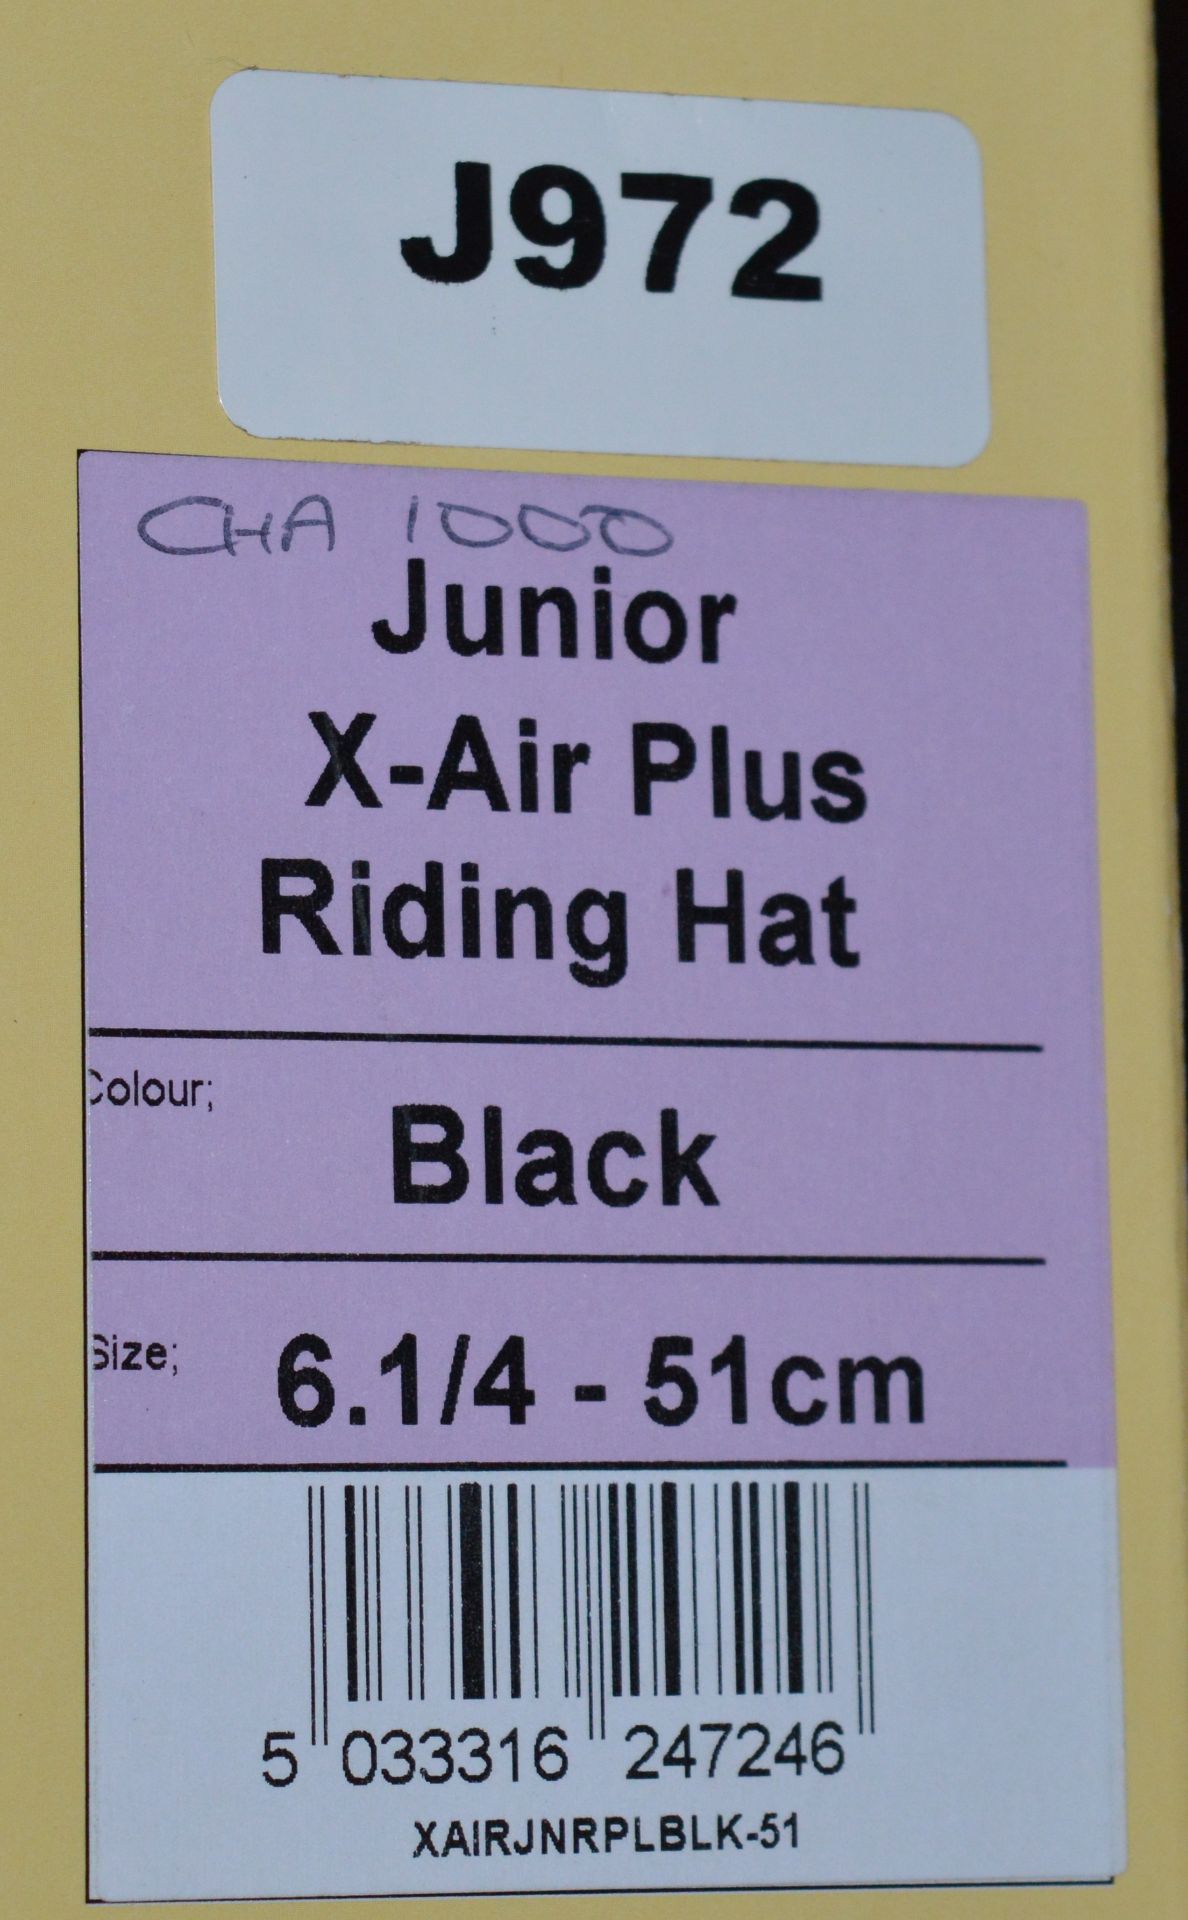 1 x Champion X-Air Junior Horse Riding Helmet in Black - Size 51cm - Ref J971 - CL401 - Ref J972 - - Bild 4 aus 5